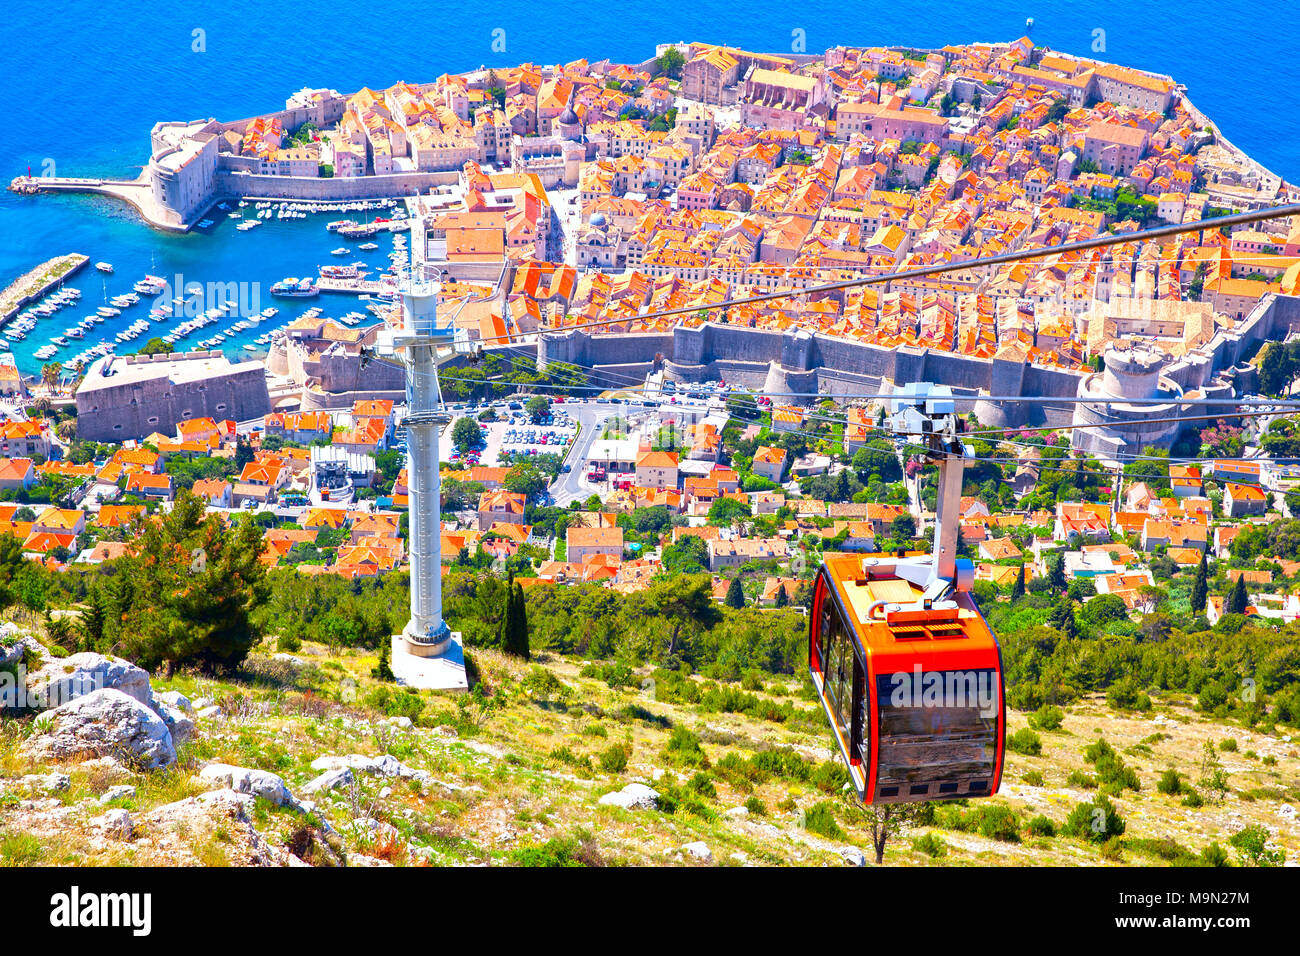 Vue panoramique de la vieille ville de Dubrovnik à partir de la colline, Croatie Banque D'Images